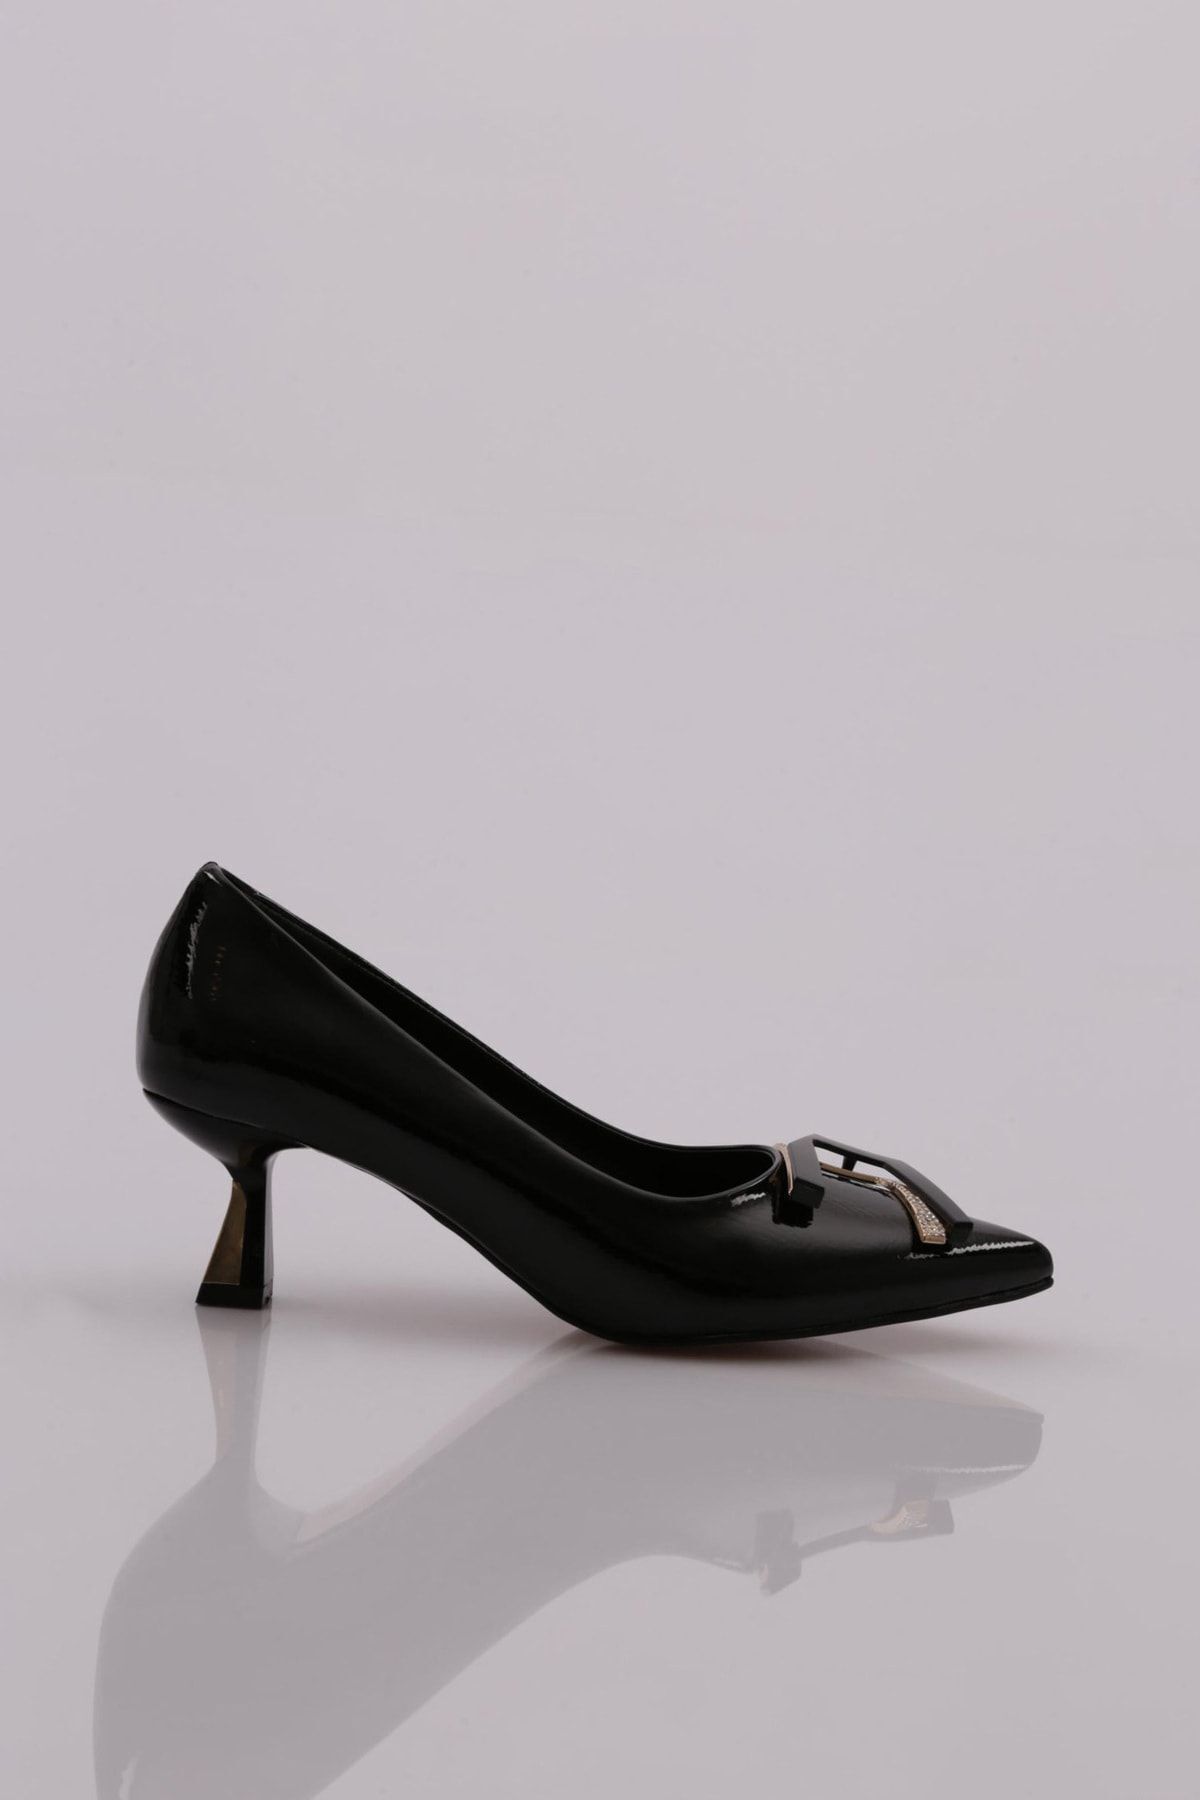 Dgn 644 Kadın Tokalı Topuklu Ayakkabı Siyah Kırışık Rugan